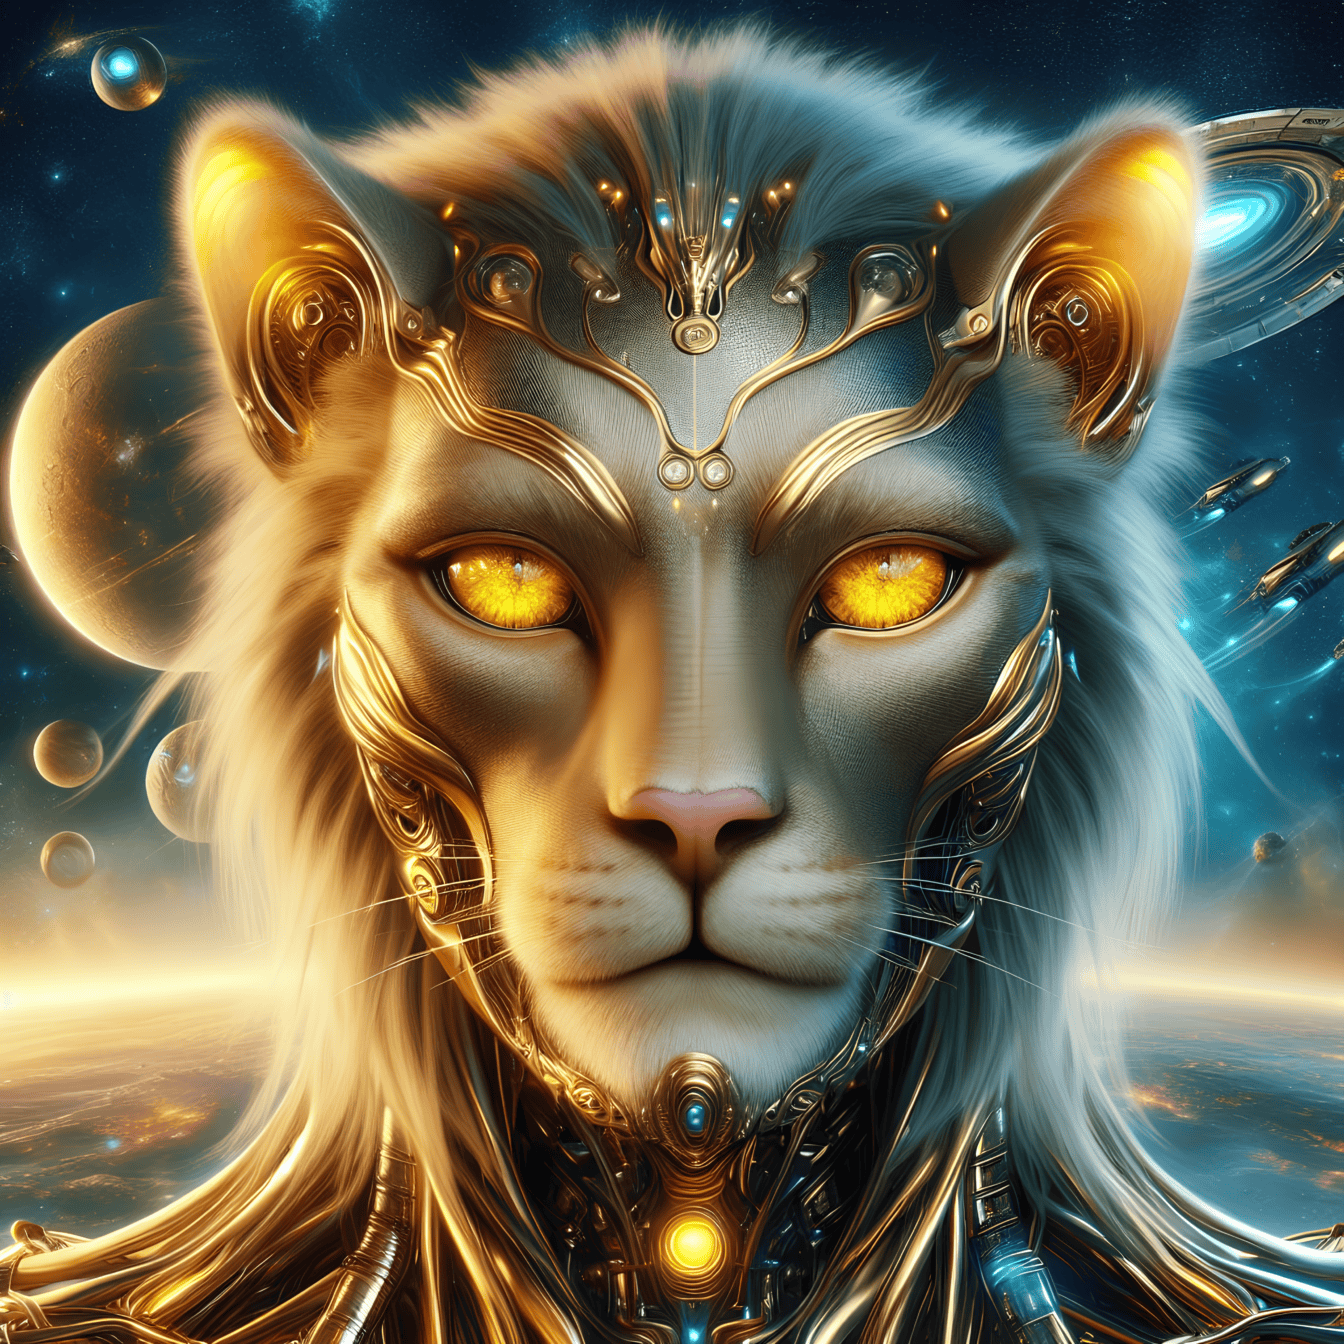 Portret van een gouden godheid, een buitenaardse leeuw-cyborg van een andere planeet